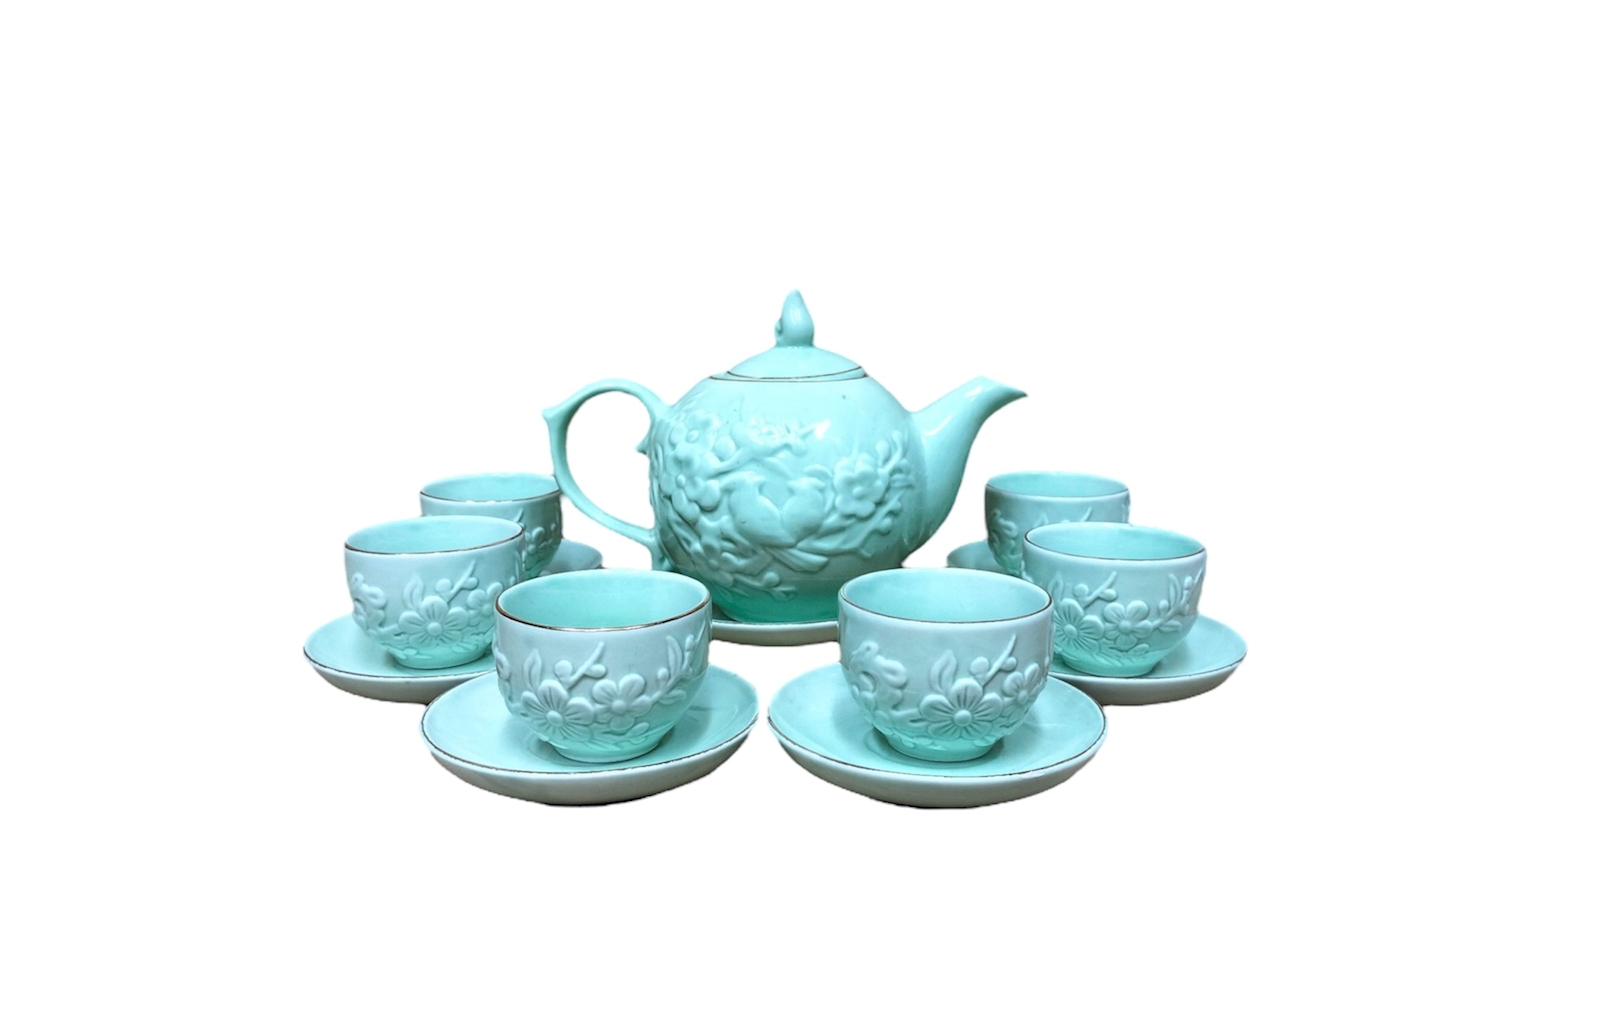 Bộ bình trà men xanh ngọc, mã 115361, đắp nổi 3D chim hoa đào, gốm sứ bát tràng tinh vân